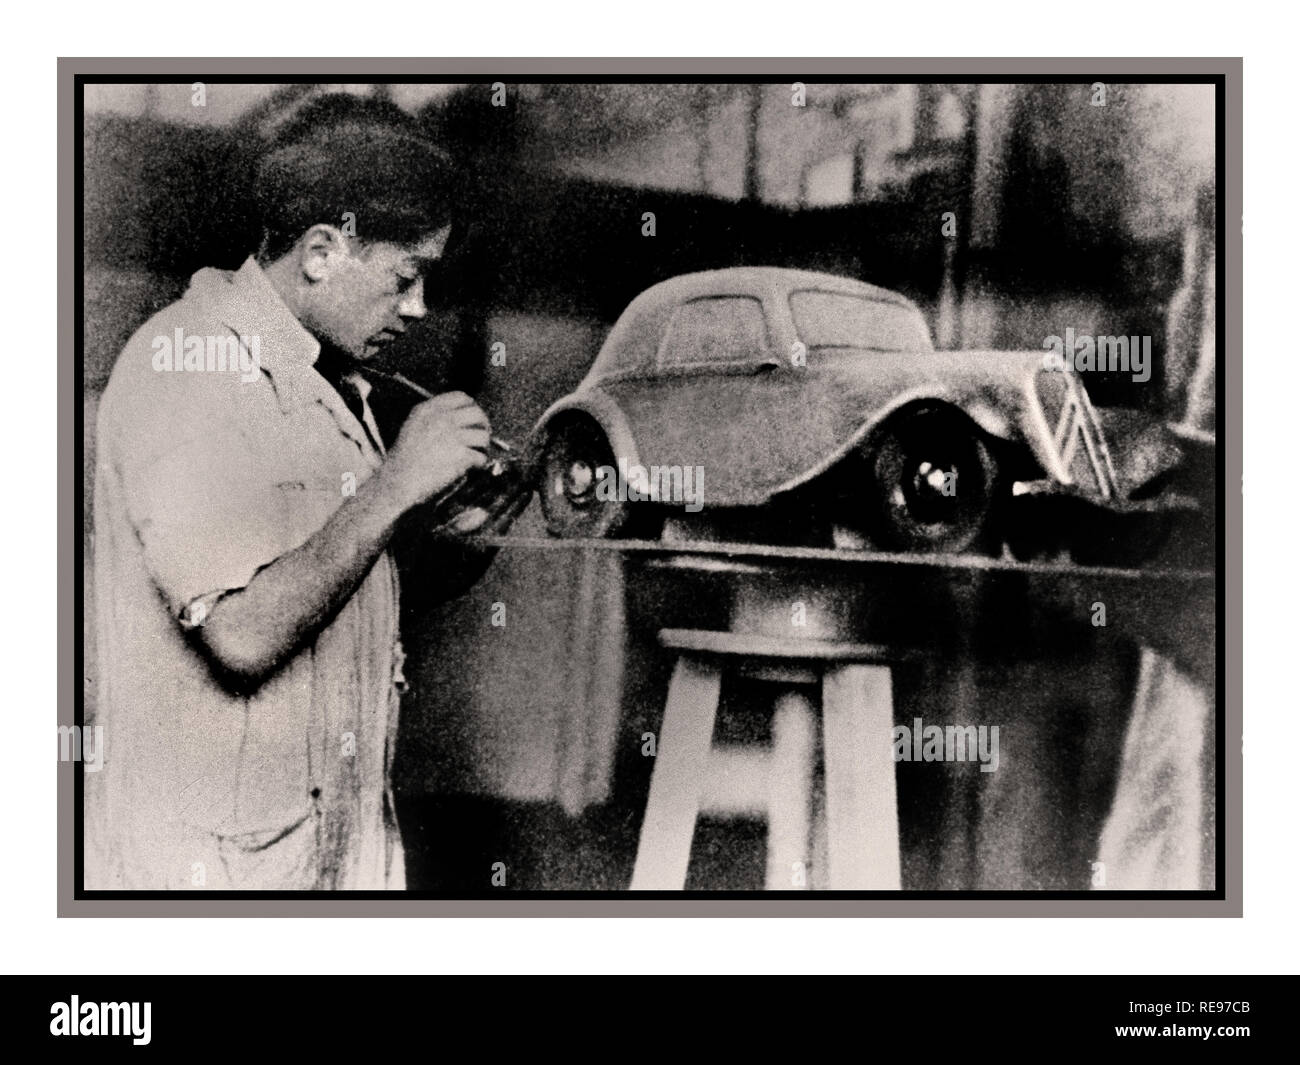 Jahrgang Archiv Bild von Bertoni auto Designer mit Plastilin Modell von Citroen Avant. Flaminio Bertoni machte die bekanntesten französischen Autos Der französische Automobil Geschichte, die Autos, die Frankreich als Nation definiert. 1932 wurde er von Citroën, für die im Jahr 1934 stellte er dem Citroen Traction Avant Design erstellt, in Plastilin, zum ersten Mal in der Geschichte Stockfoto